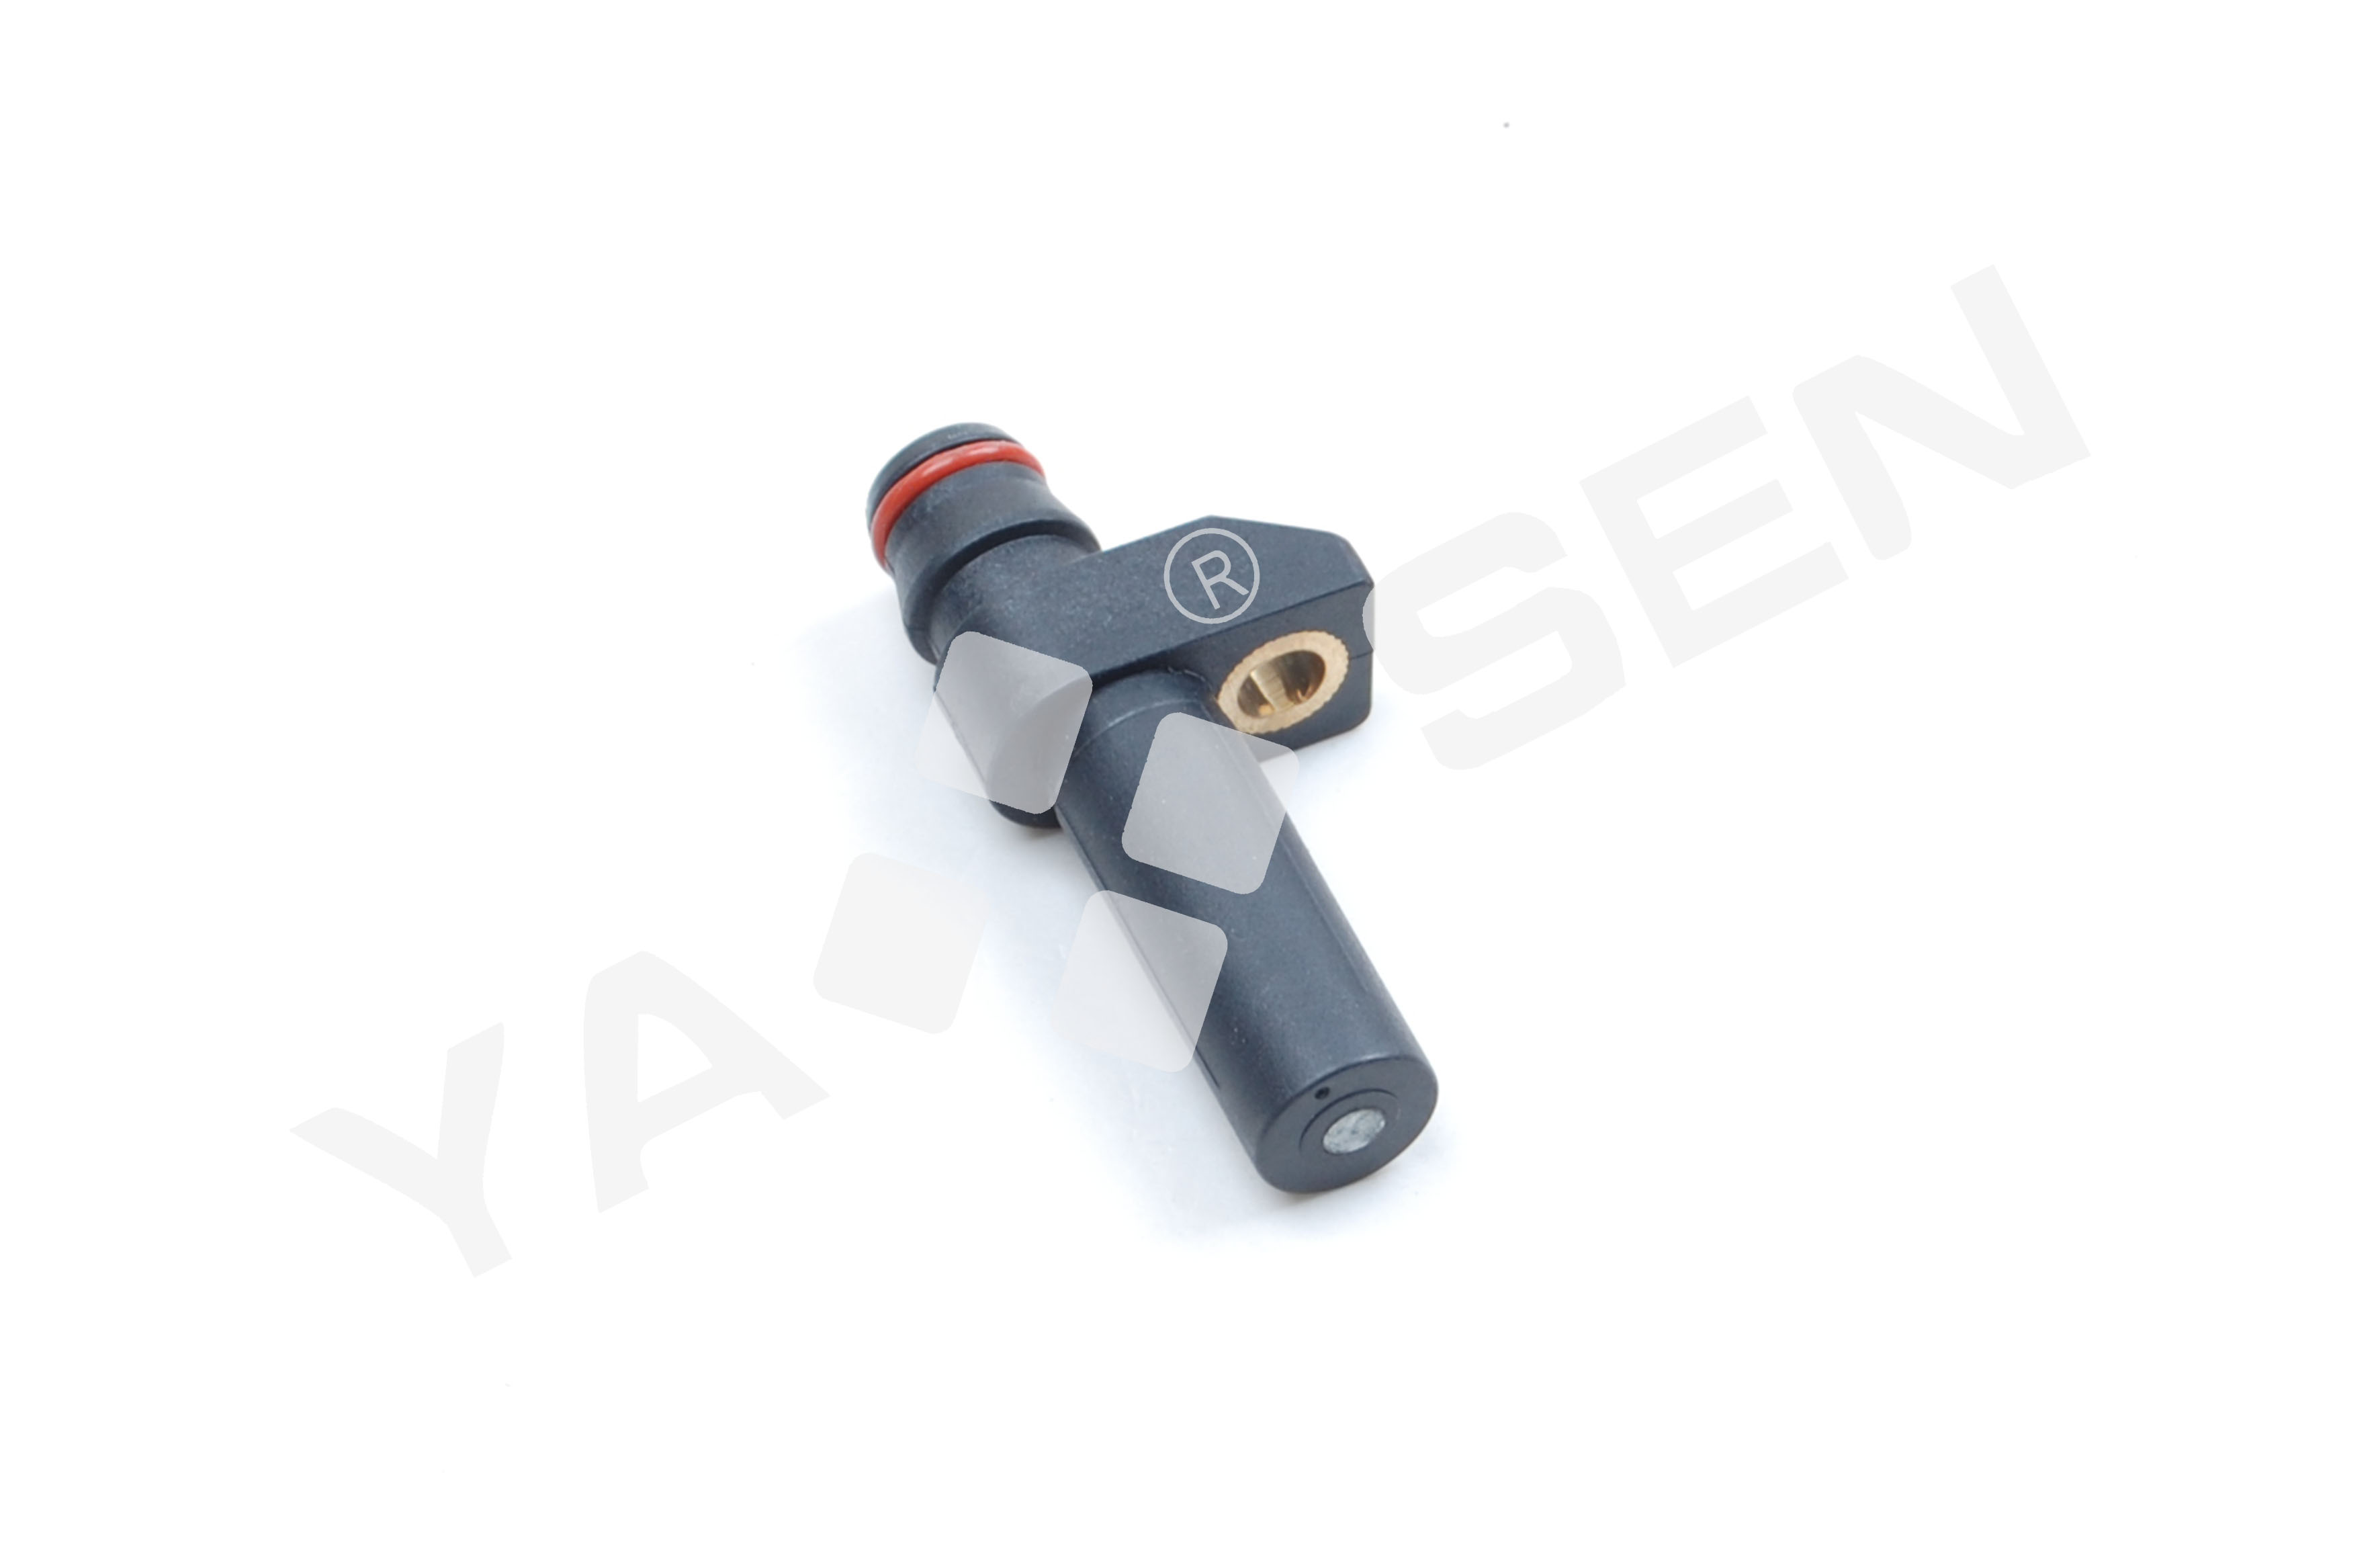 Hot sale Porsche Crankshaft Position Sensor - Crankshaft Position Sensor for Mercedes Benz, 0261210122 0261210123 0031537528 0031537328 CRK231 CRS1207 PC466  5S184 – YASEN